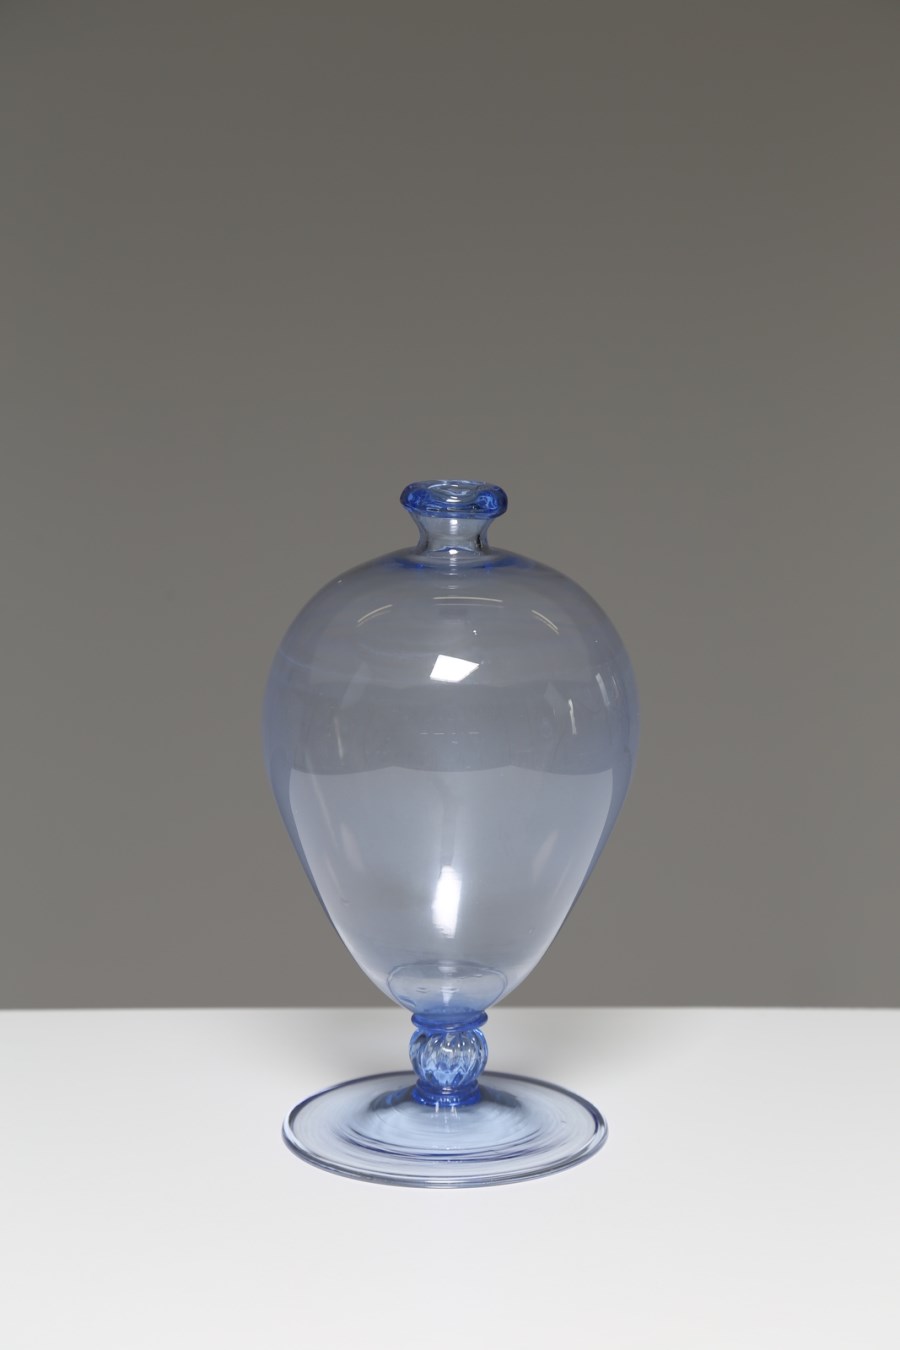 Vaso Veronese ovoidale in vetro soffiato colore acquamarina, per Venini, Murano anni 30 (Vittorio Zecchin)